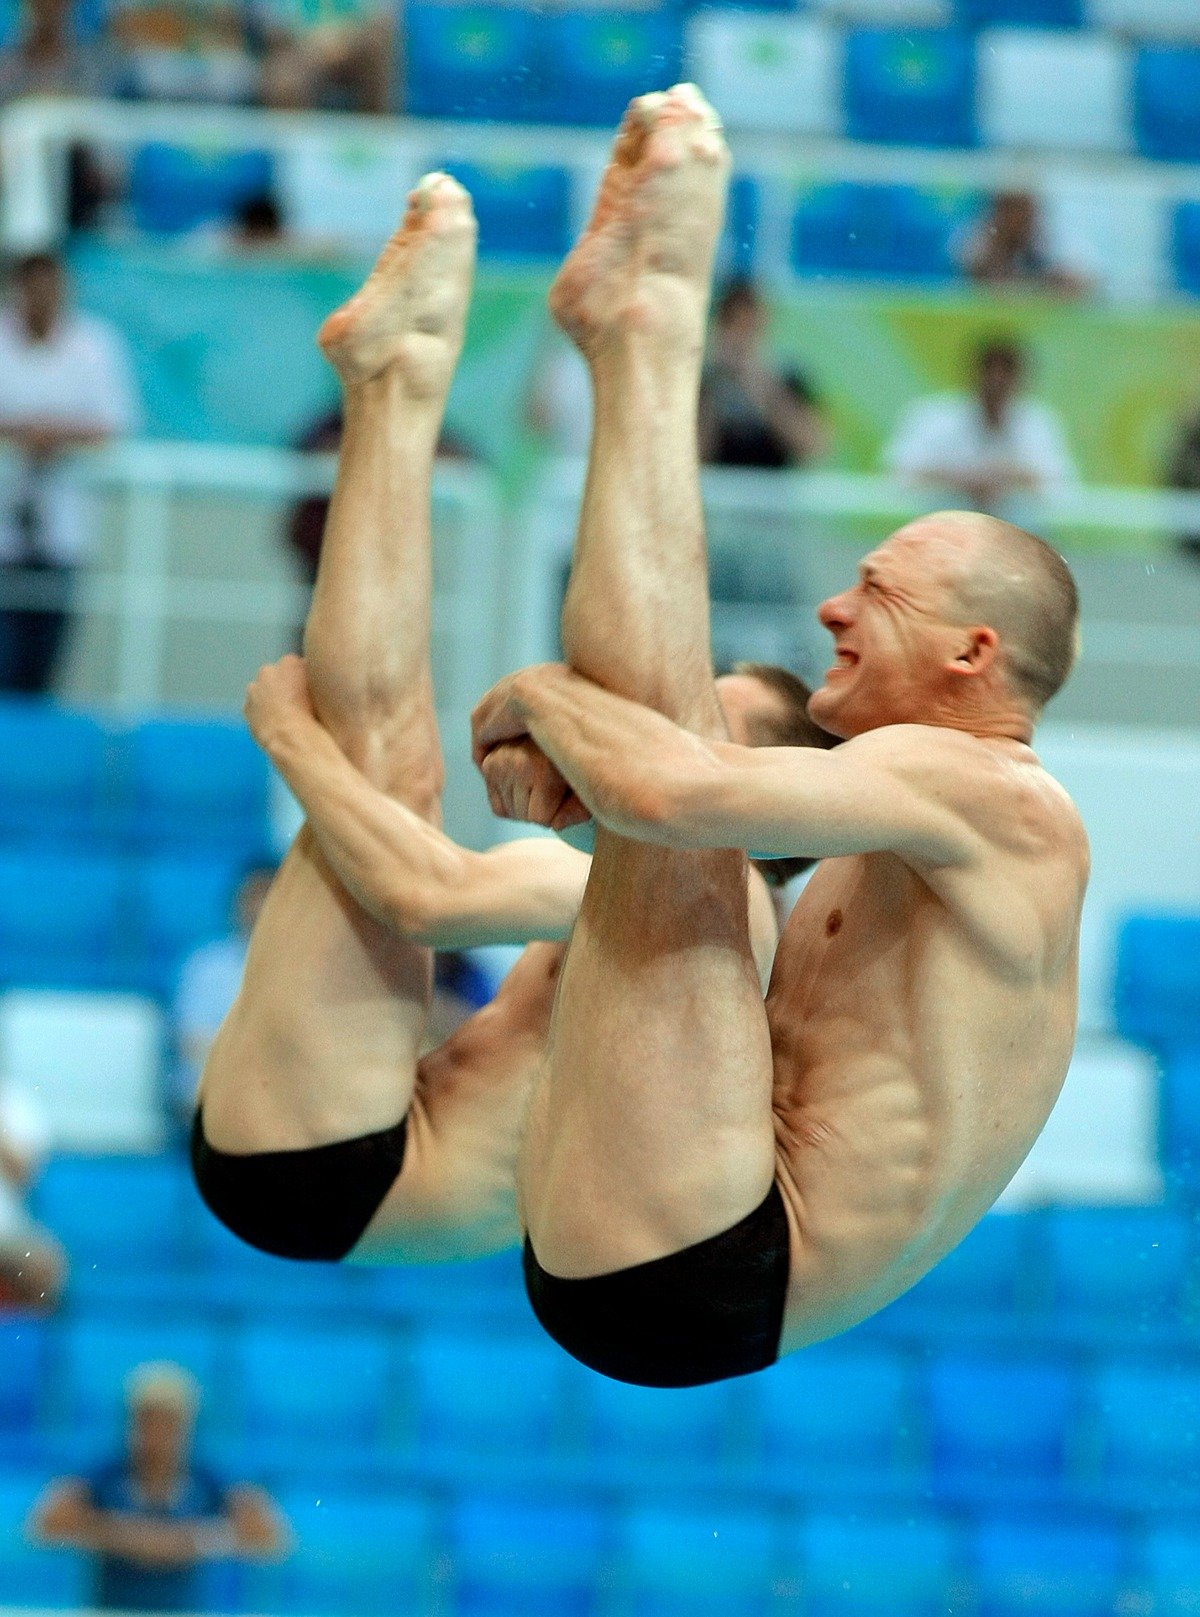 Дмитрий Саутин (на первом плане) и Юрий Кунаков (на втором плане) завоевали серебряную медаль по прыжкам в воду с трехметрового трамплина на Олимпийских играх-2008 в Пекине. Фото: Виталий Белоусов / ИТАР-ТАСС